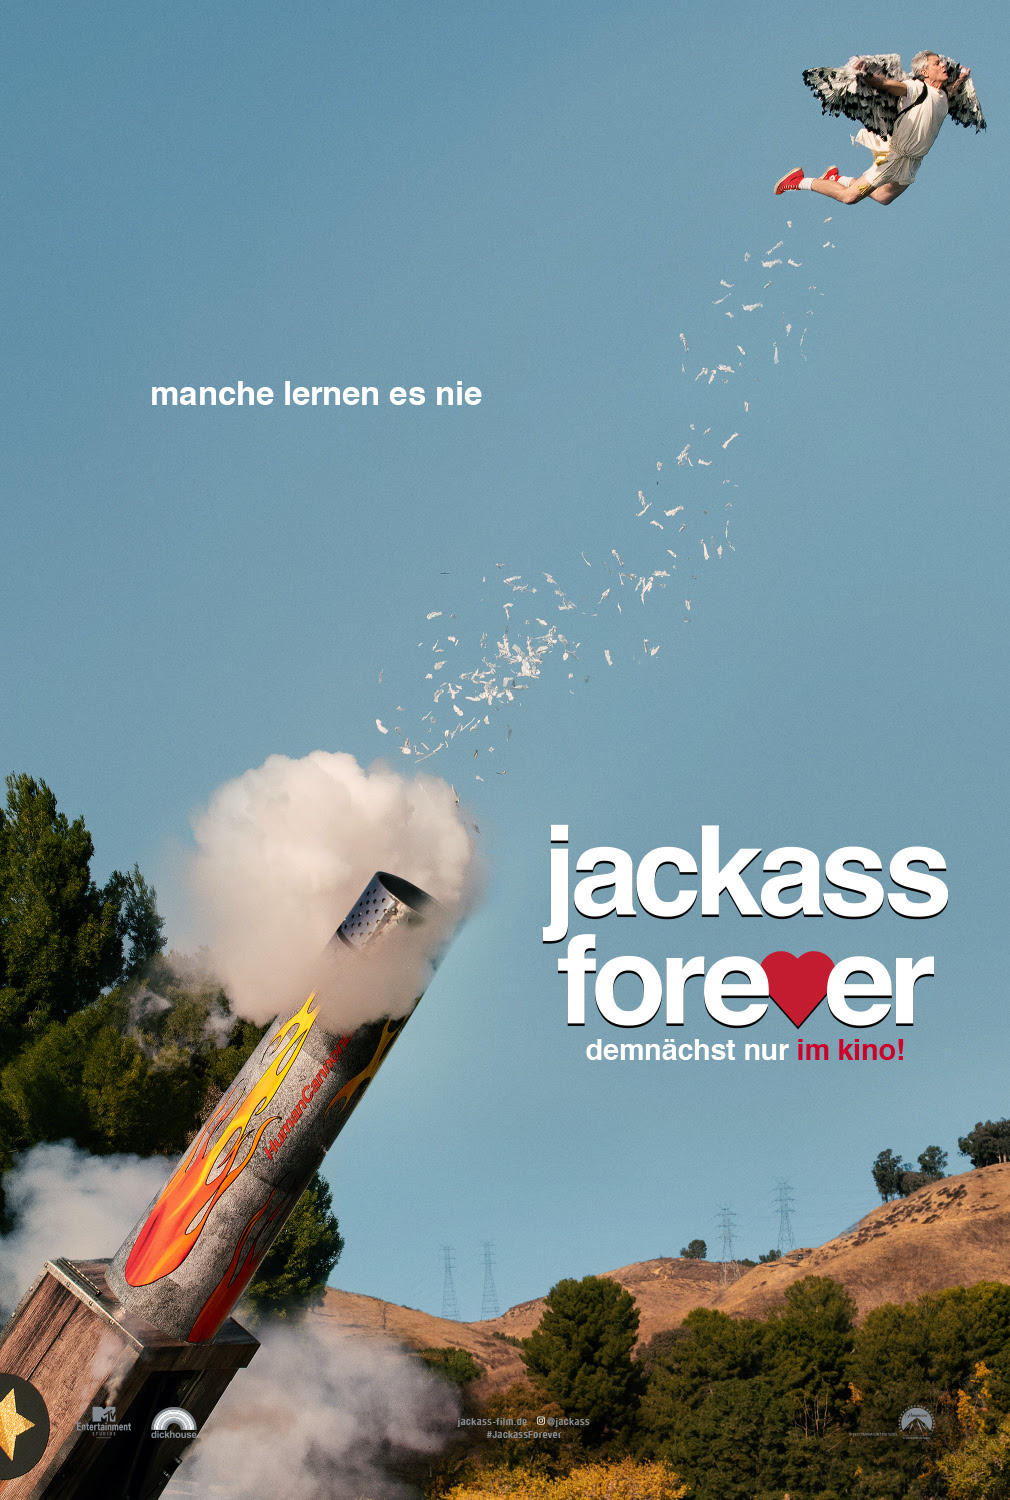 Der neue Jackass Forever Trailer verspricht eine Menge Blödsinn